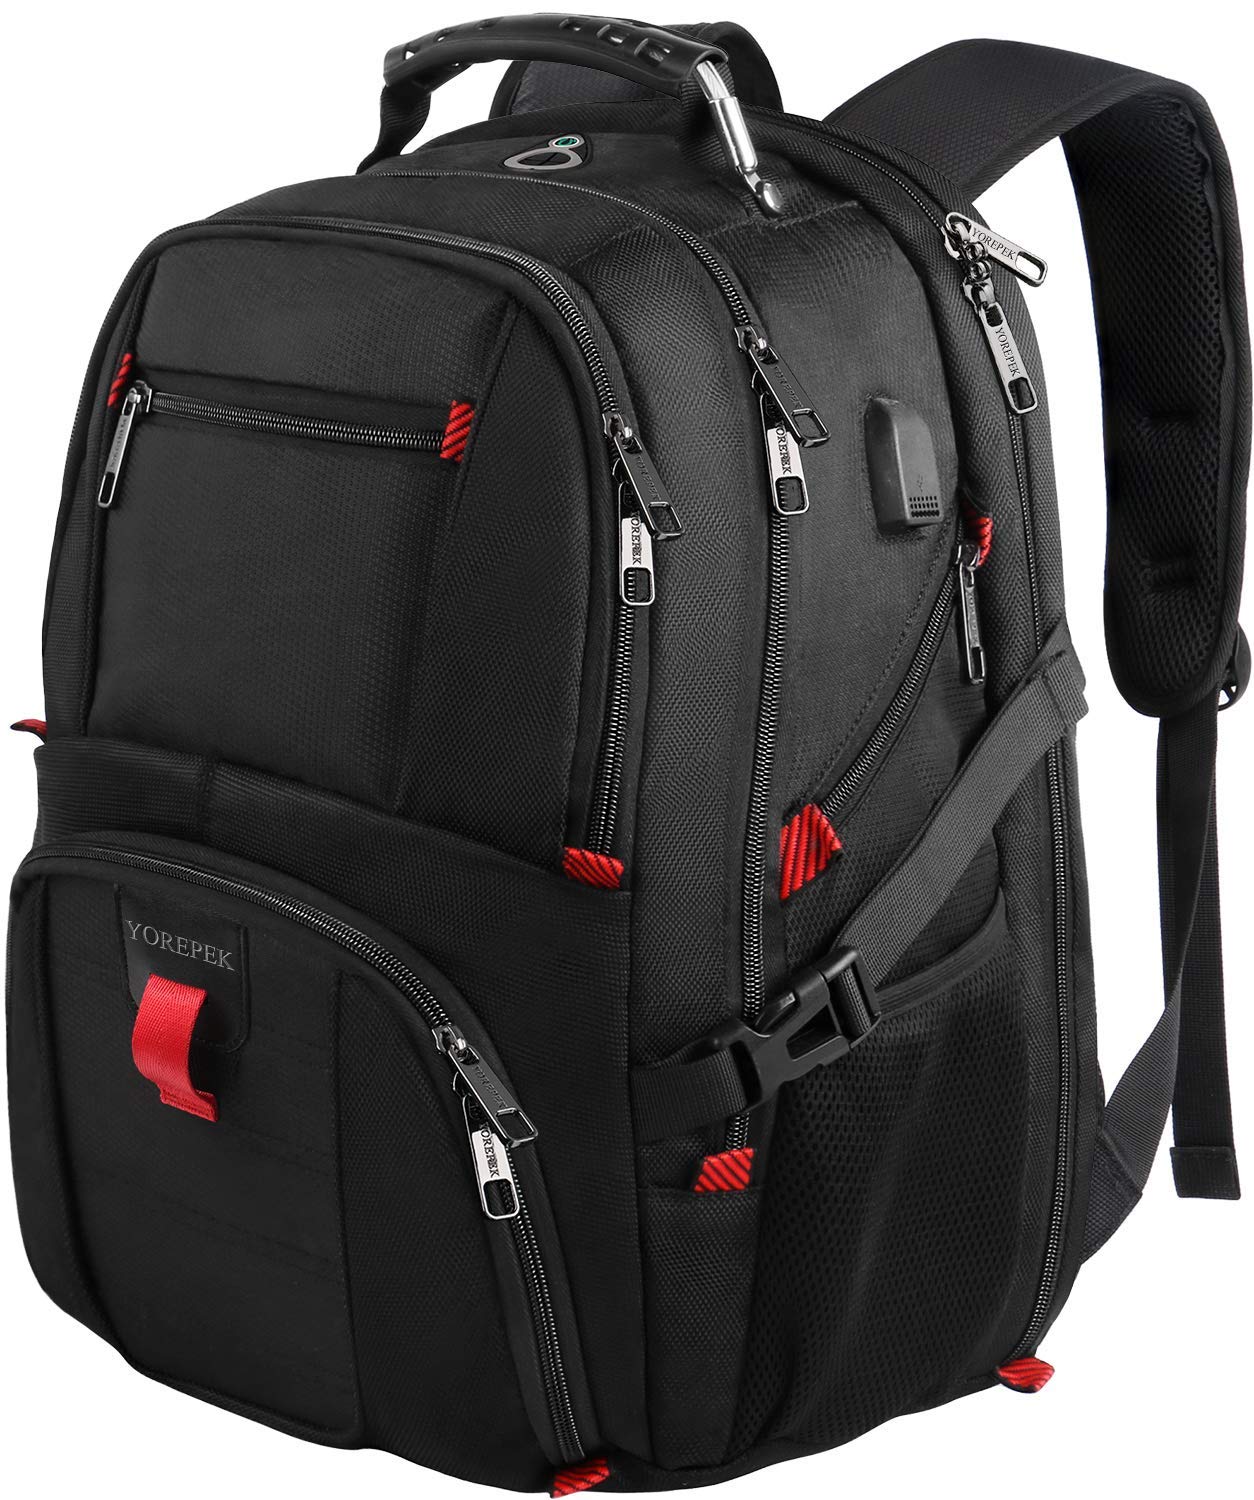 MAPOLO Moon Star Night Dream School Backpack Travel Bag Rucksack College Bookbag Travel Laptop Bag Daypack Bag for Men Women 